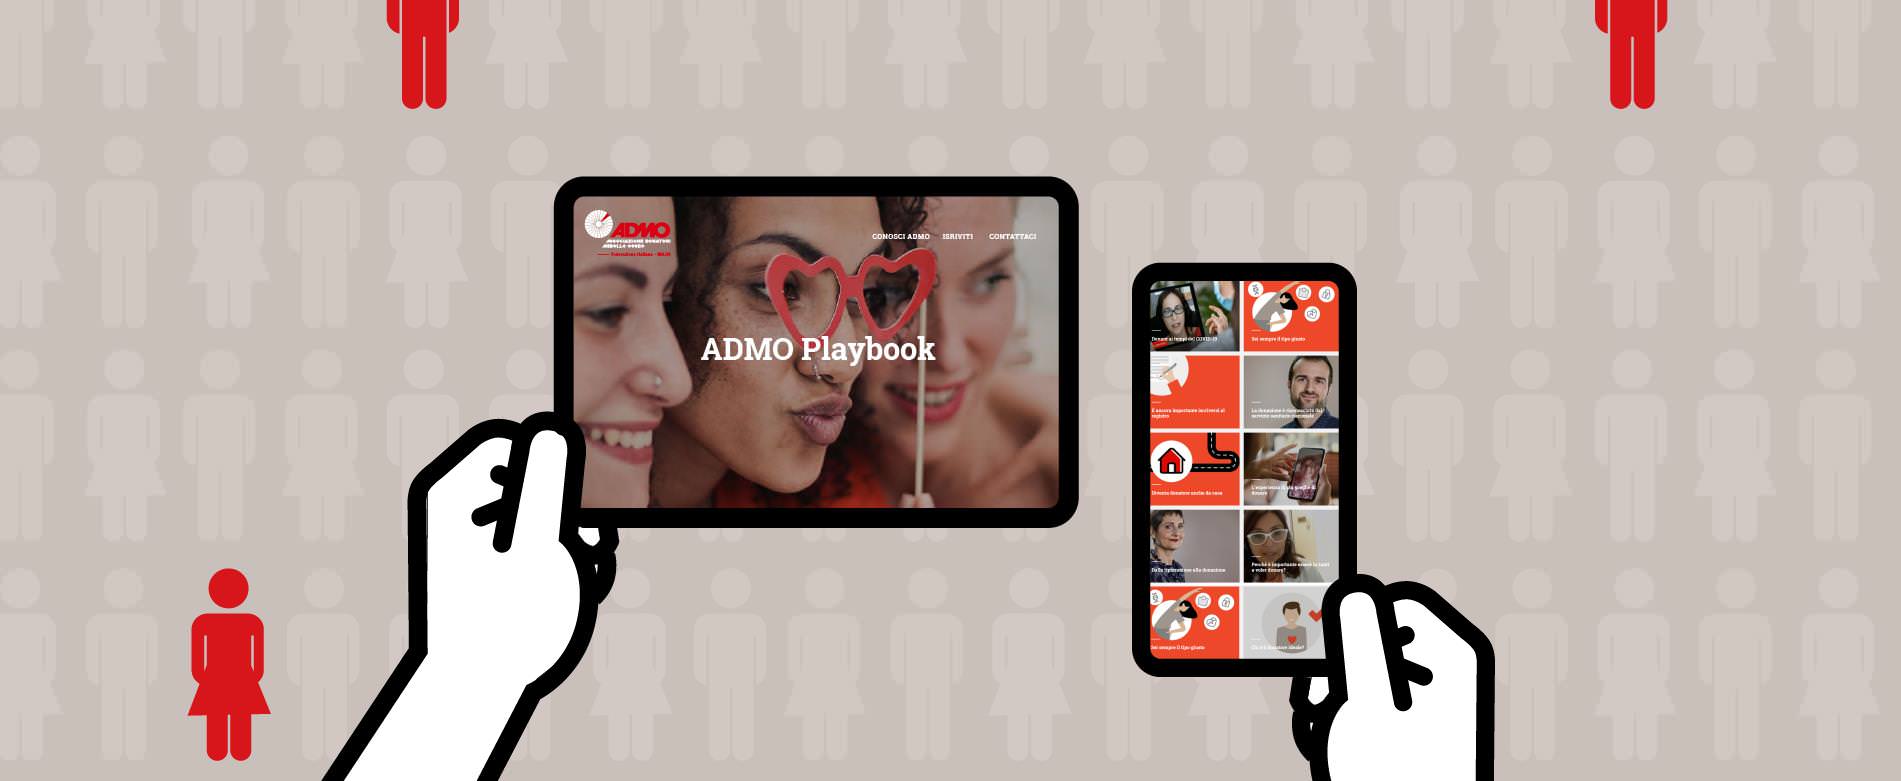 Dritti al midollo: Adacto sviluppa per ADMO il nuovo Playbook 1